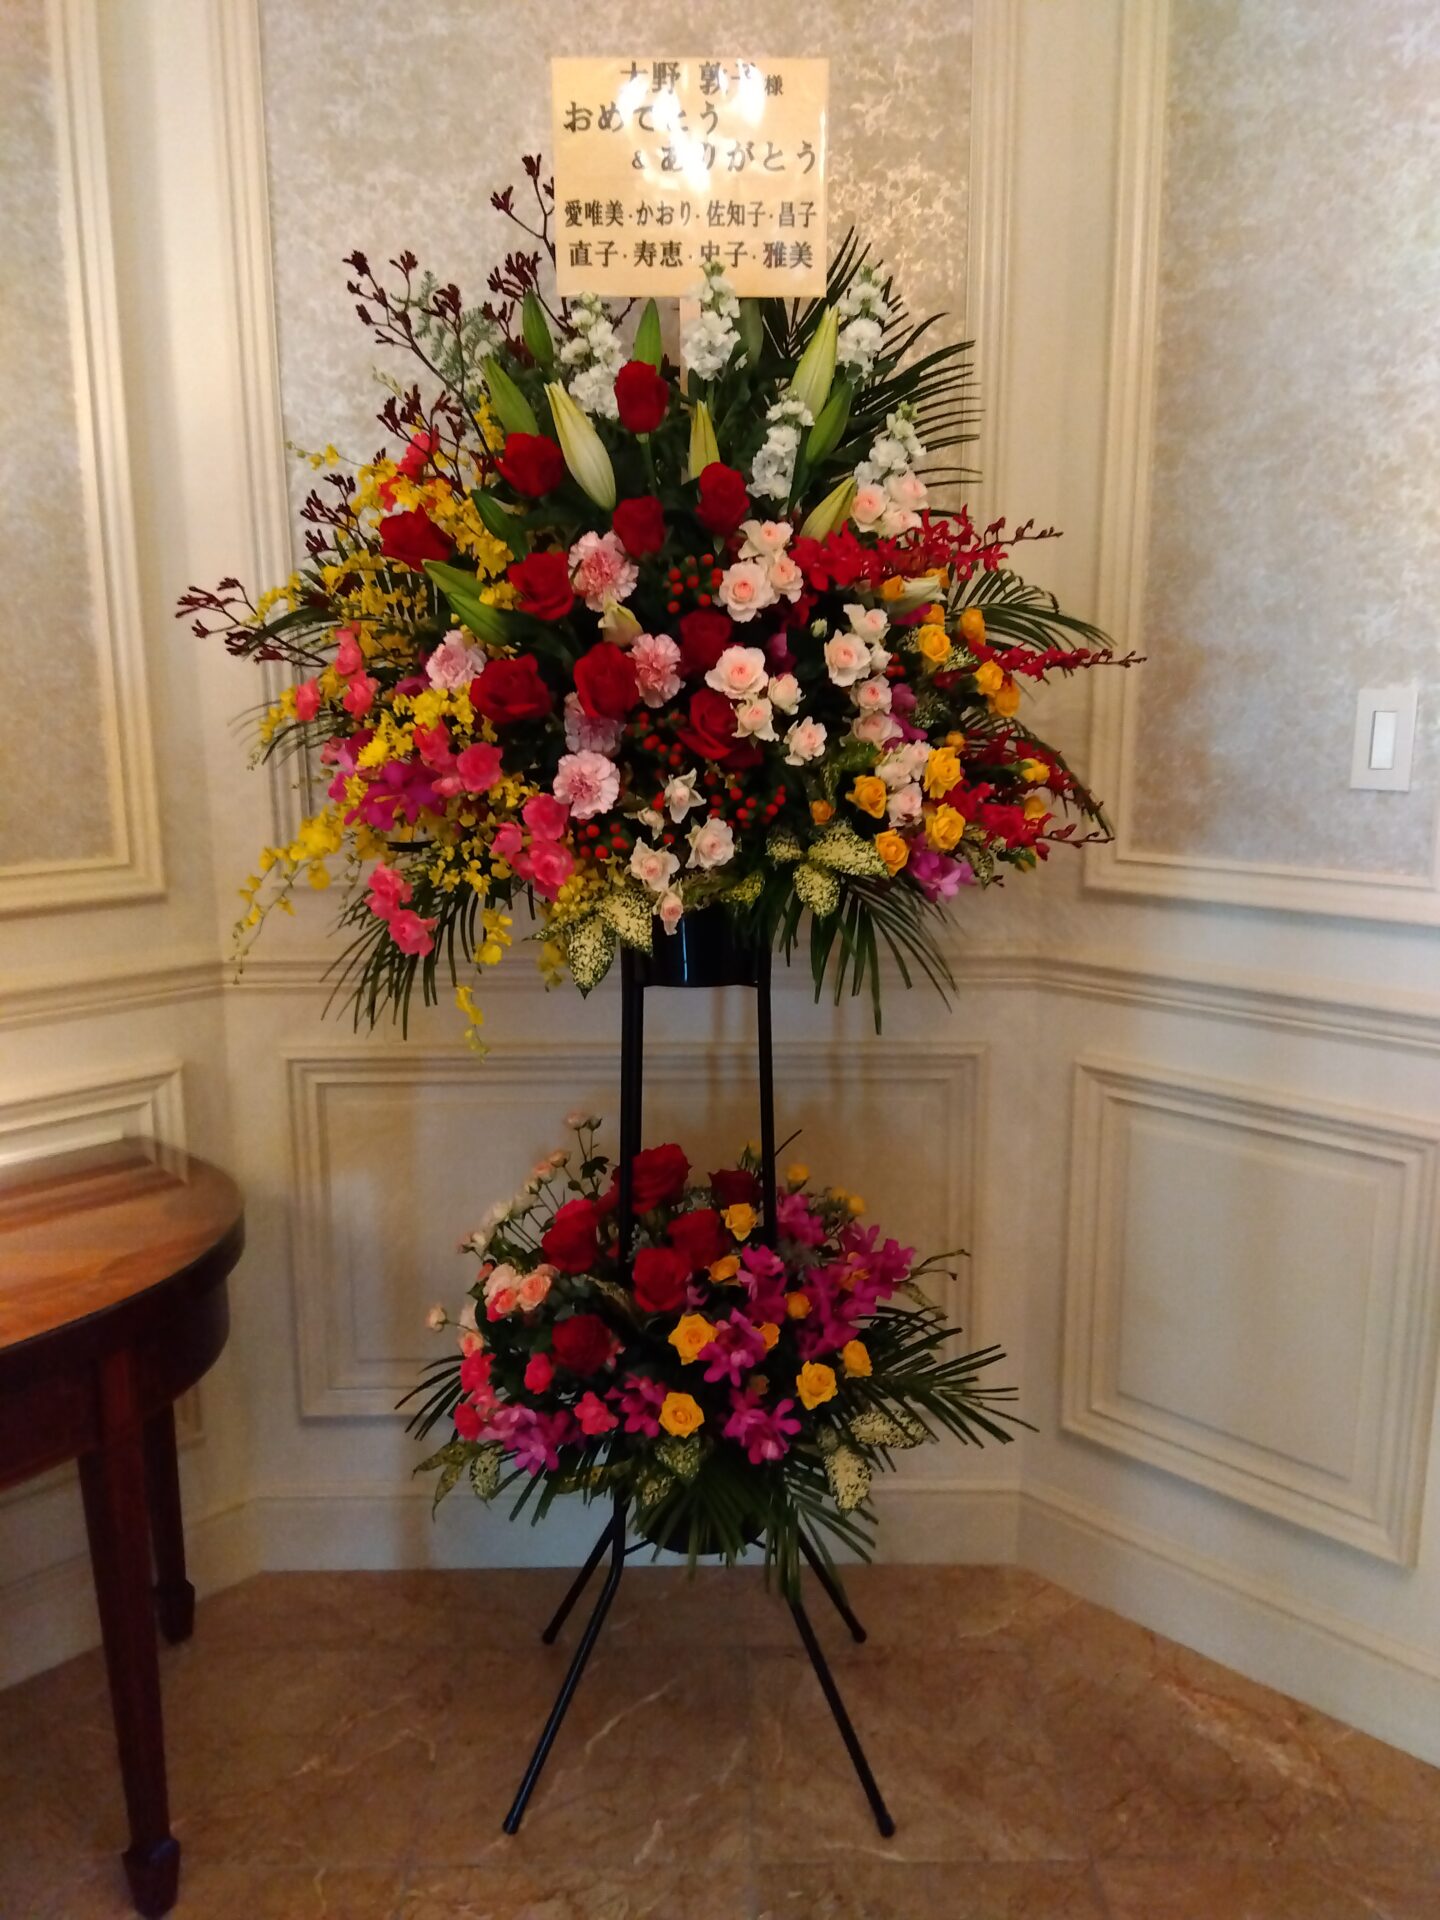 ザ・リッツ・カールトン大阪へピアノ発表会のお祝いのスタンド花